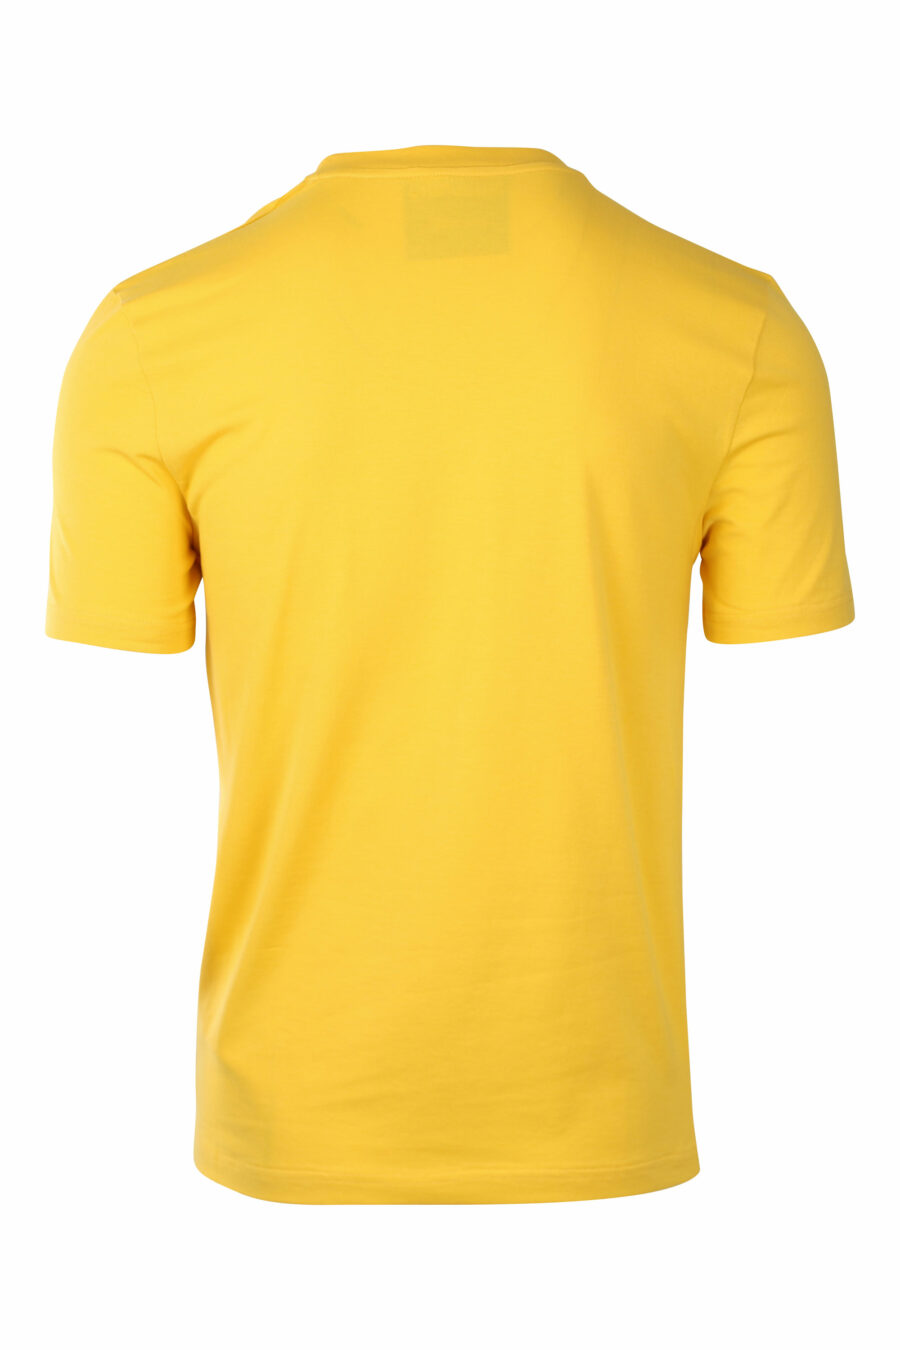 Camiseta amarilla con logo "signature" - IMG 1422